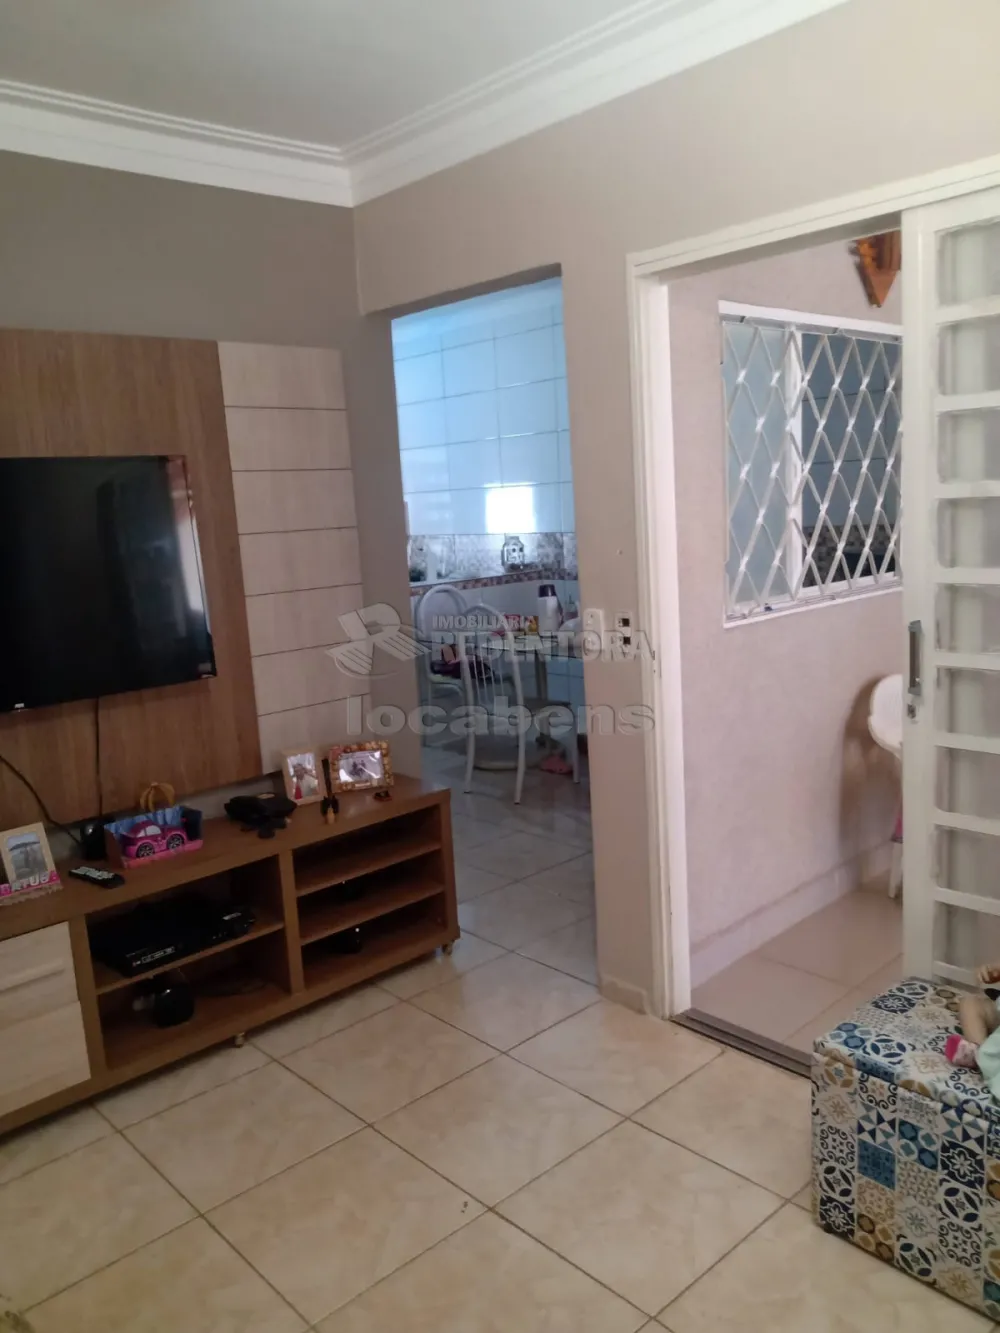 Alugar Casa / Padrão em São José do Rio Preto R$ 1.200,00 - Foto 1